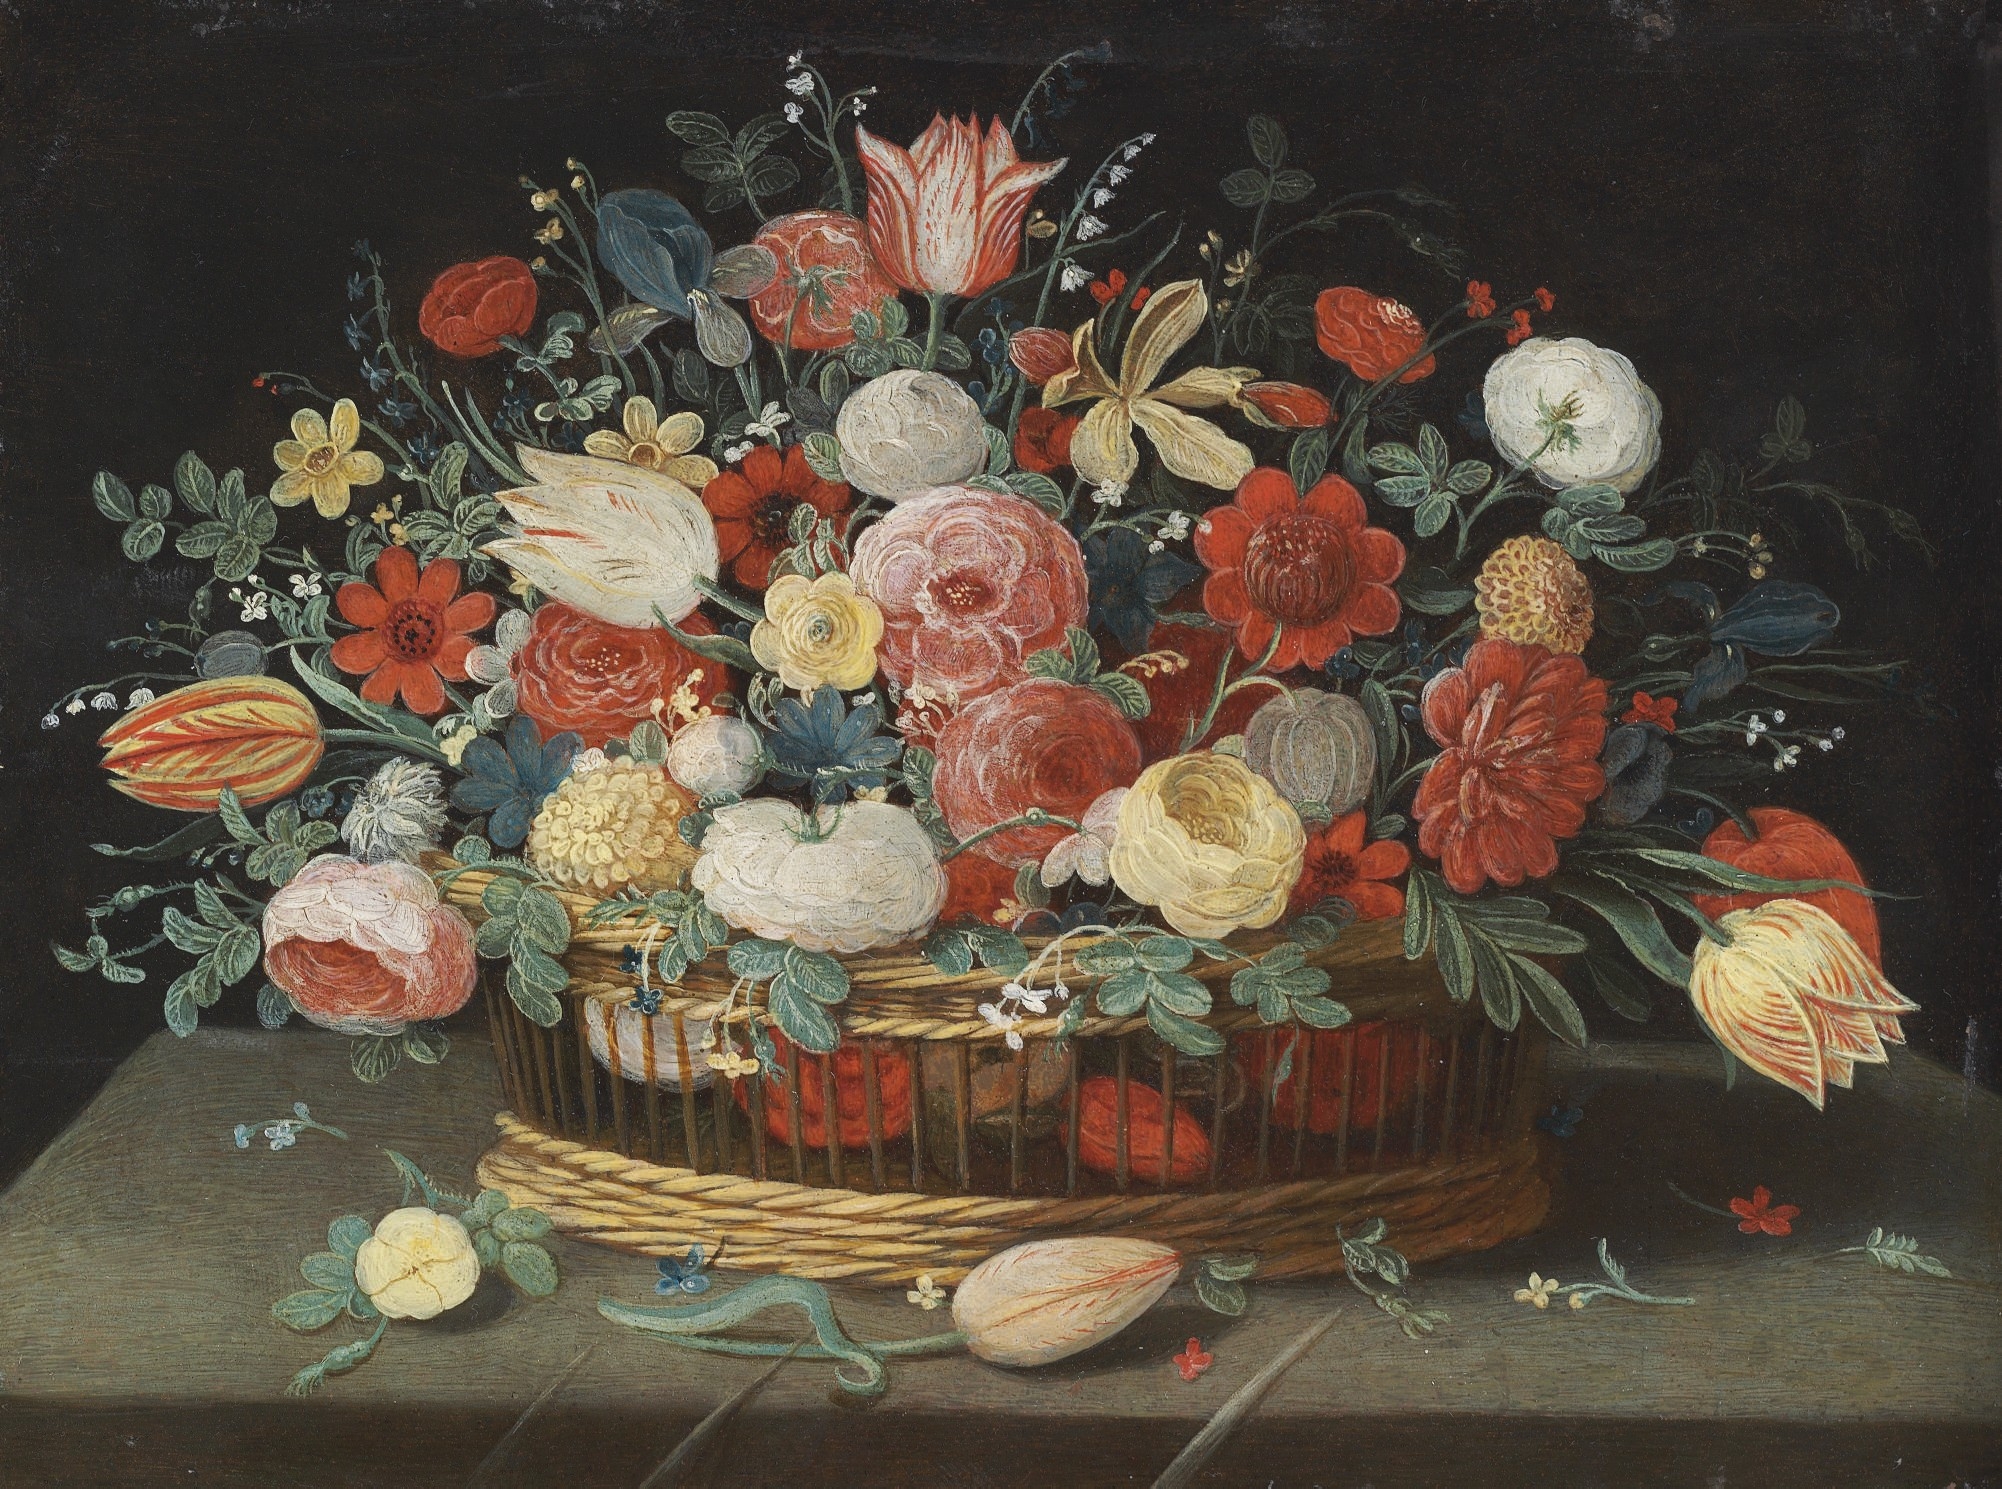 Jan van Kessel de Oude - Rozen, tulpen, irissen en andere bloemen in een mand, op een gedrapeerde tafel bezaaid met bloemen en bladeren